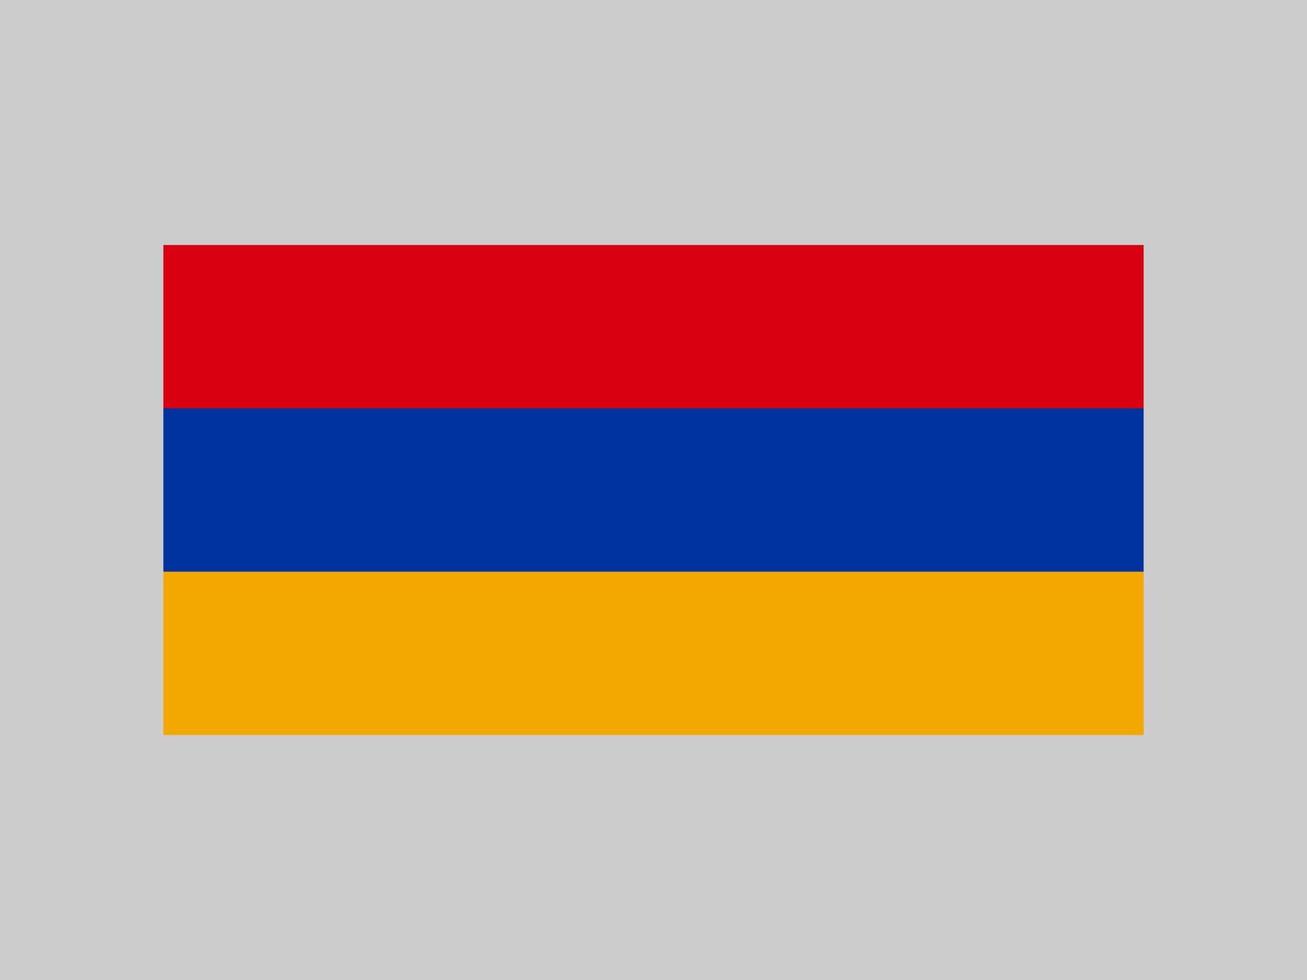 bandeira da armênia, cores oficiais e proporção. ilustração vetorial. vetor